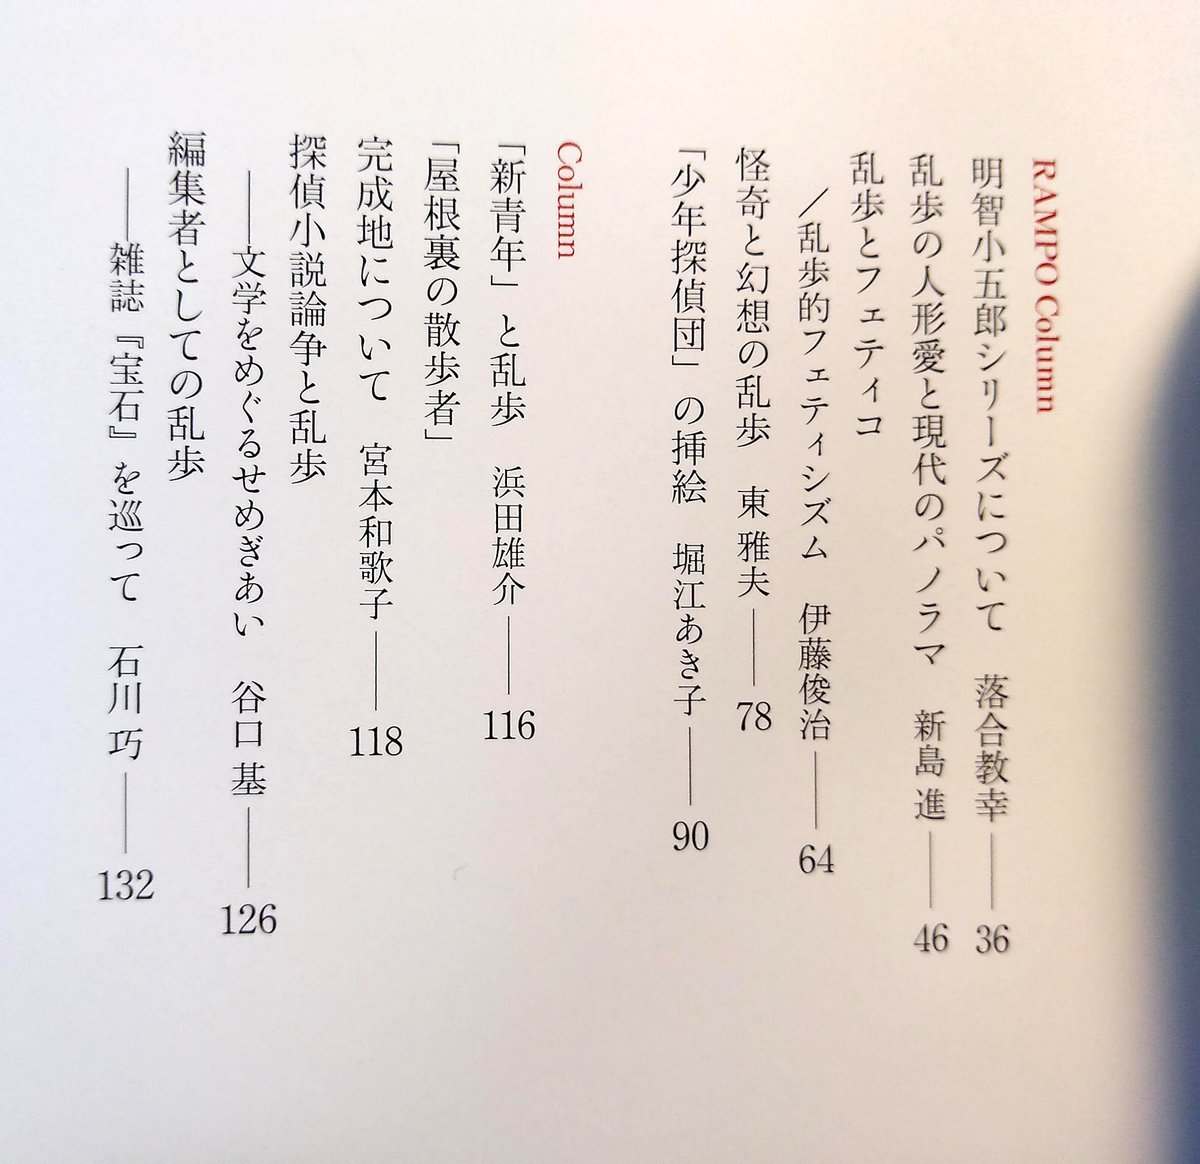 発売中の別冊太陽『江戸川乱歩--日本探偵小説の父』(平凡社)に「パノラマ島奇譚」について寄稿しています。執筆陣が…内容が…目次を見てくださいませ。 